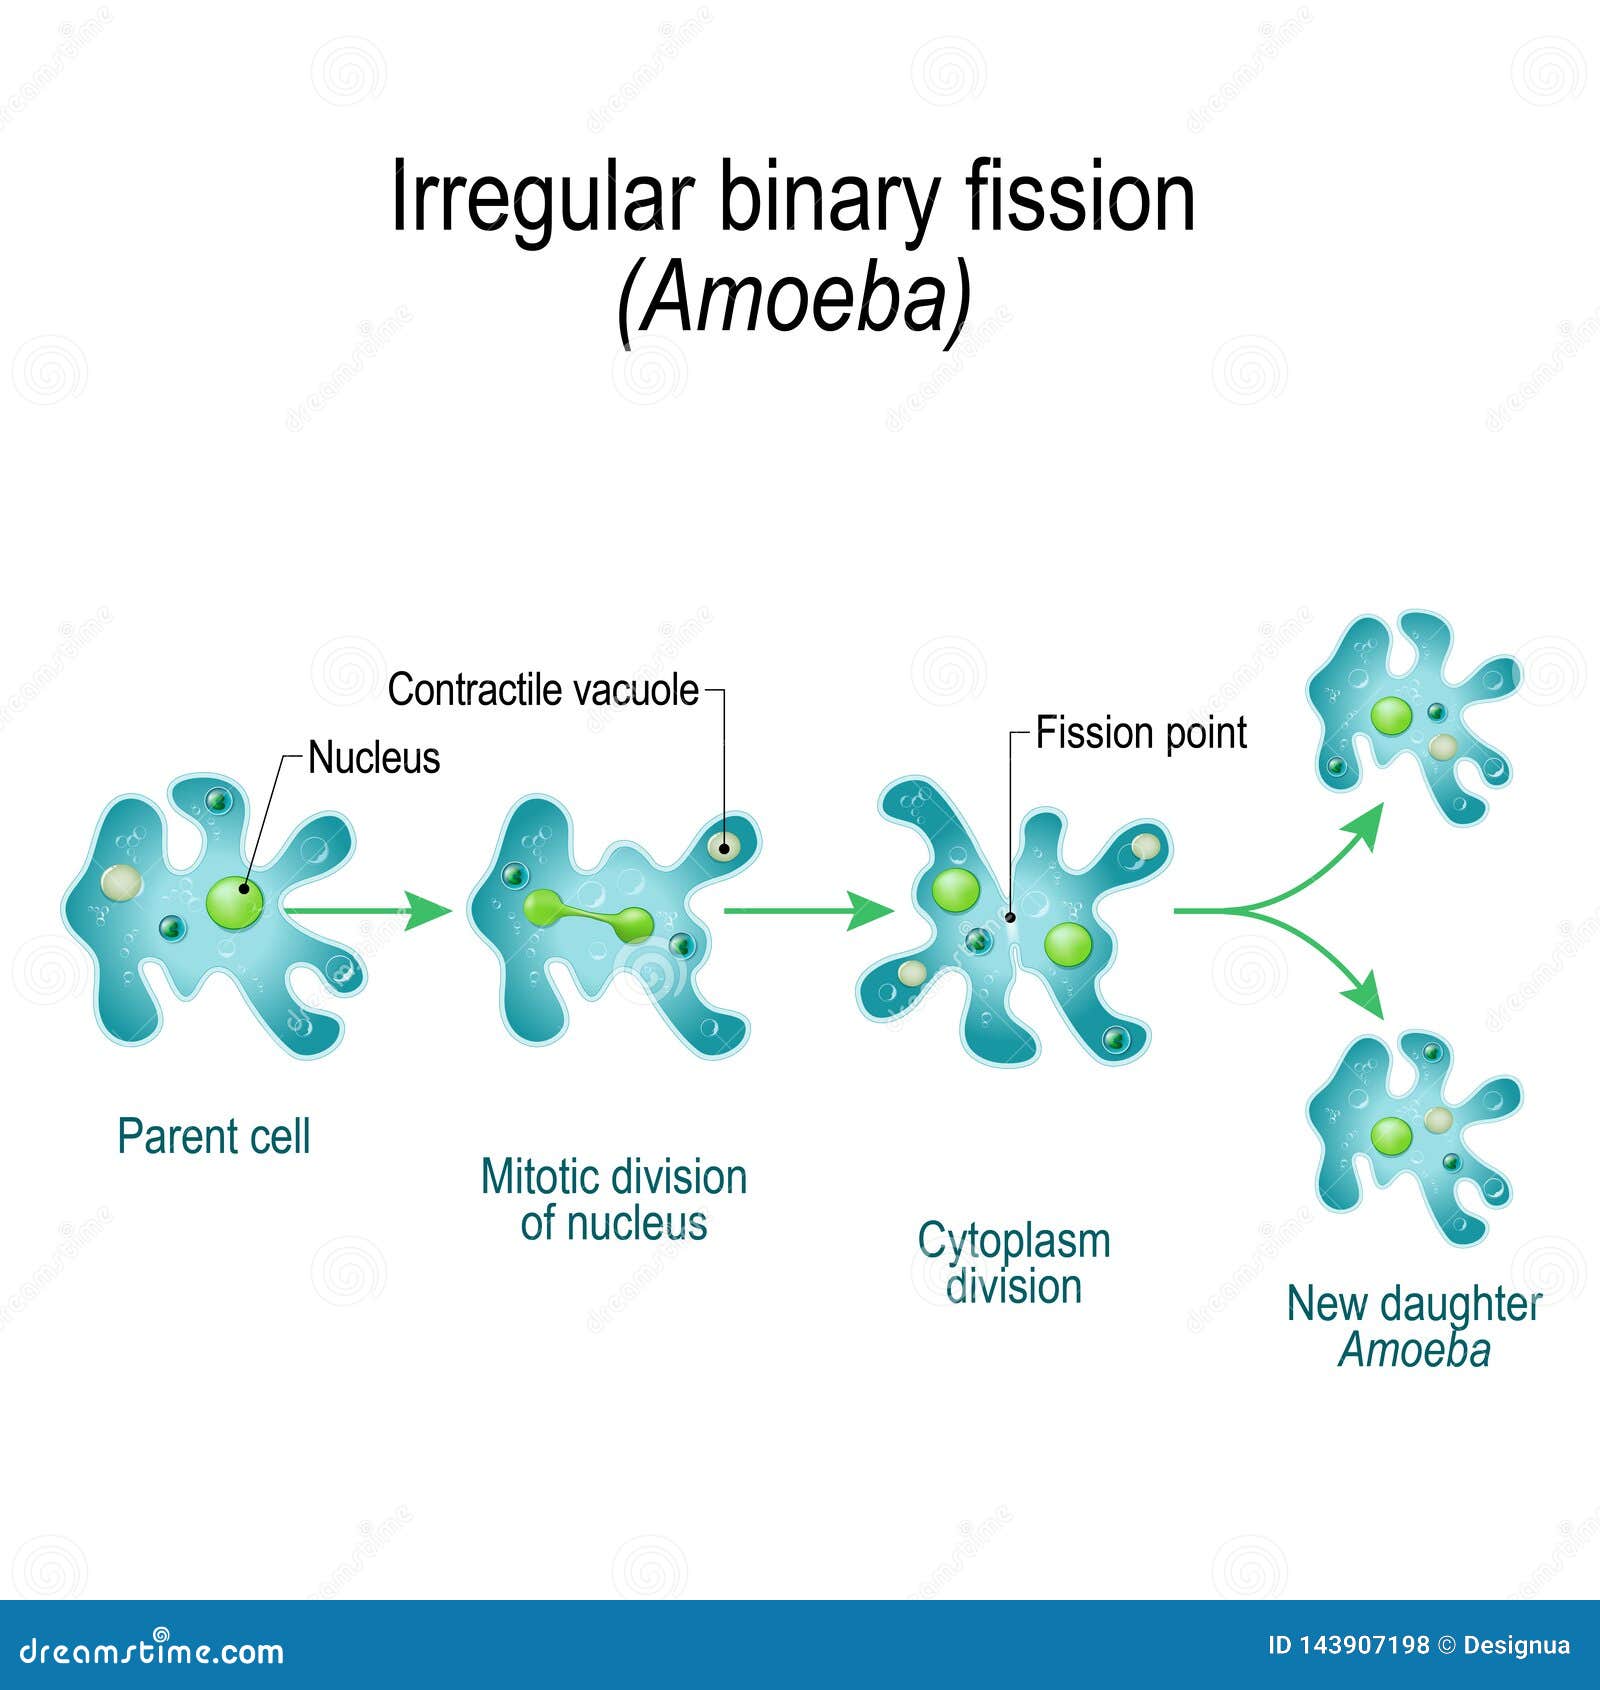 amoeba. irregular binary fission